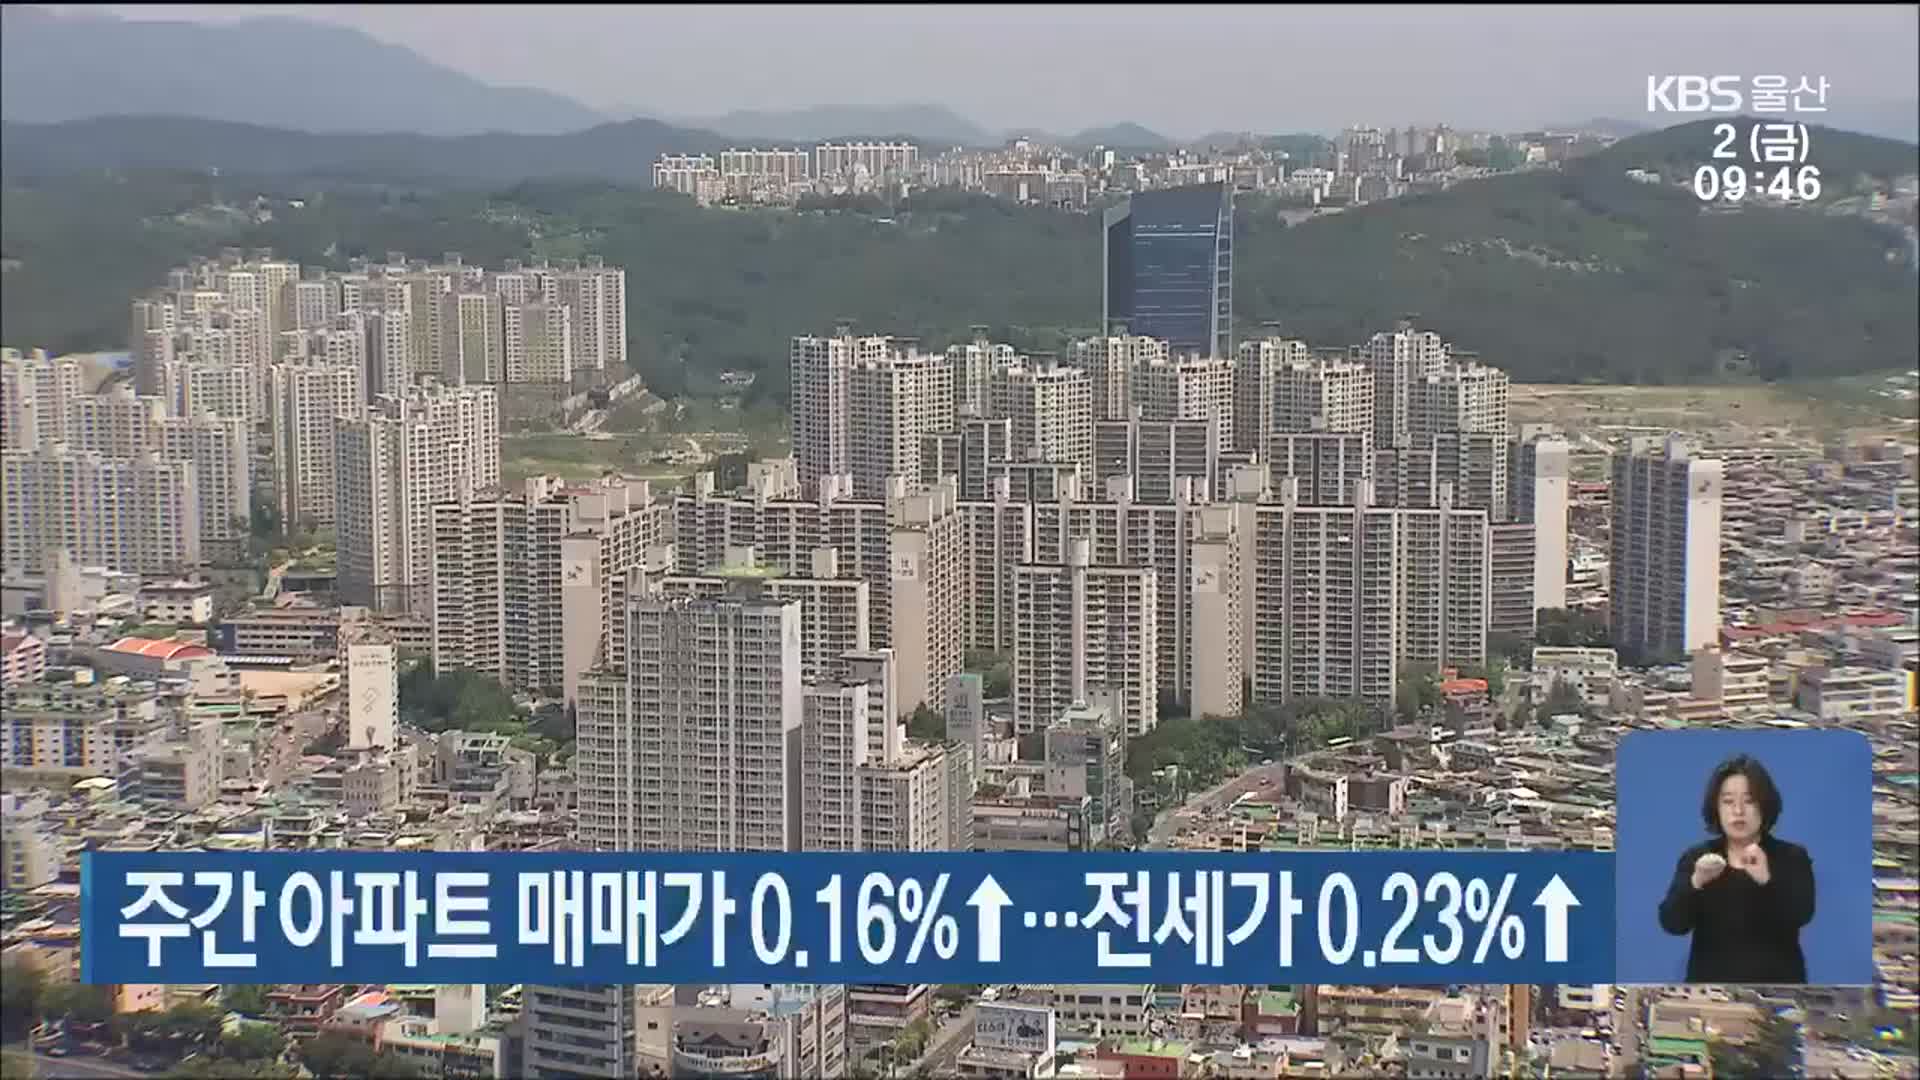 울산 주간 아파트 매매가 0.16%↑…전세가 0.23↑